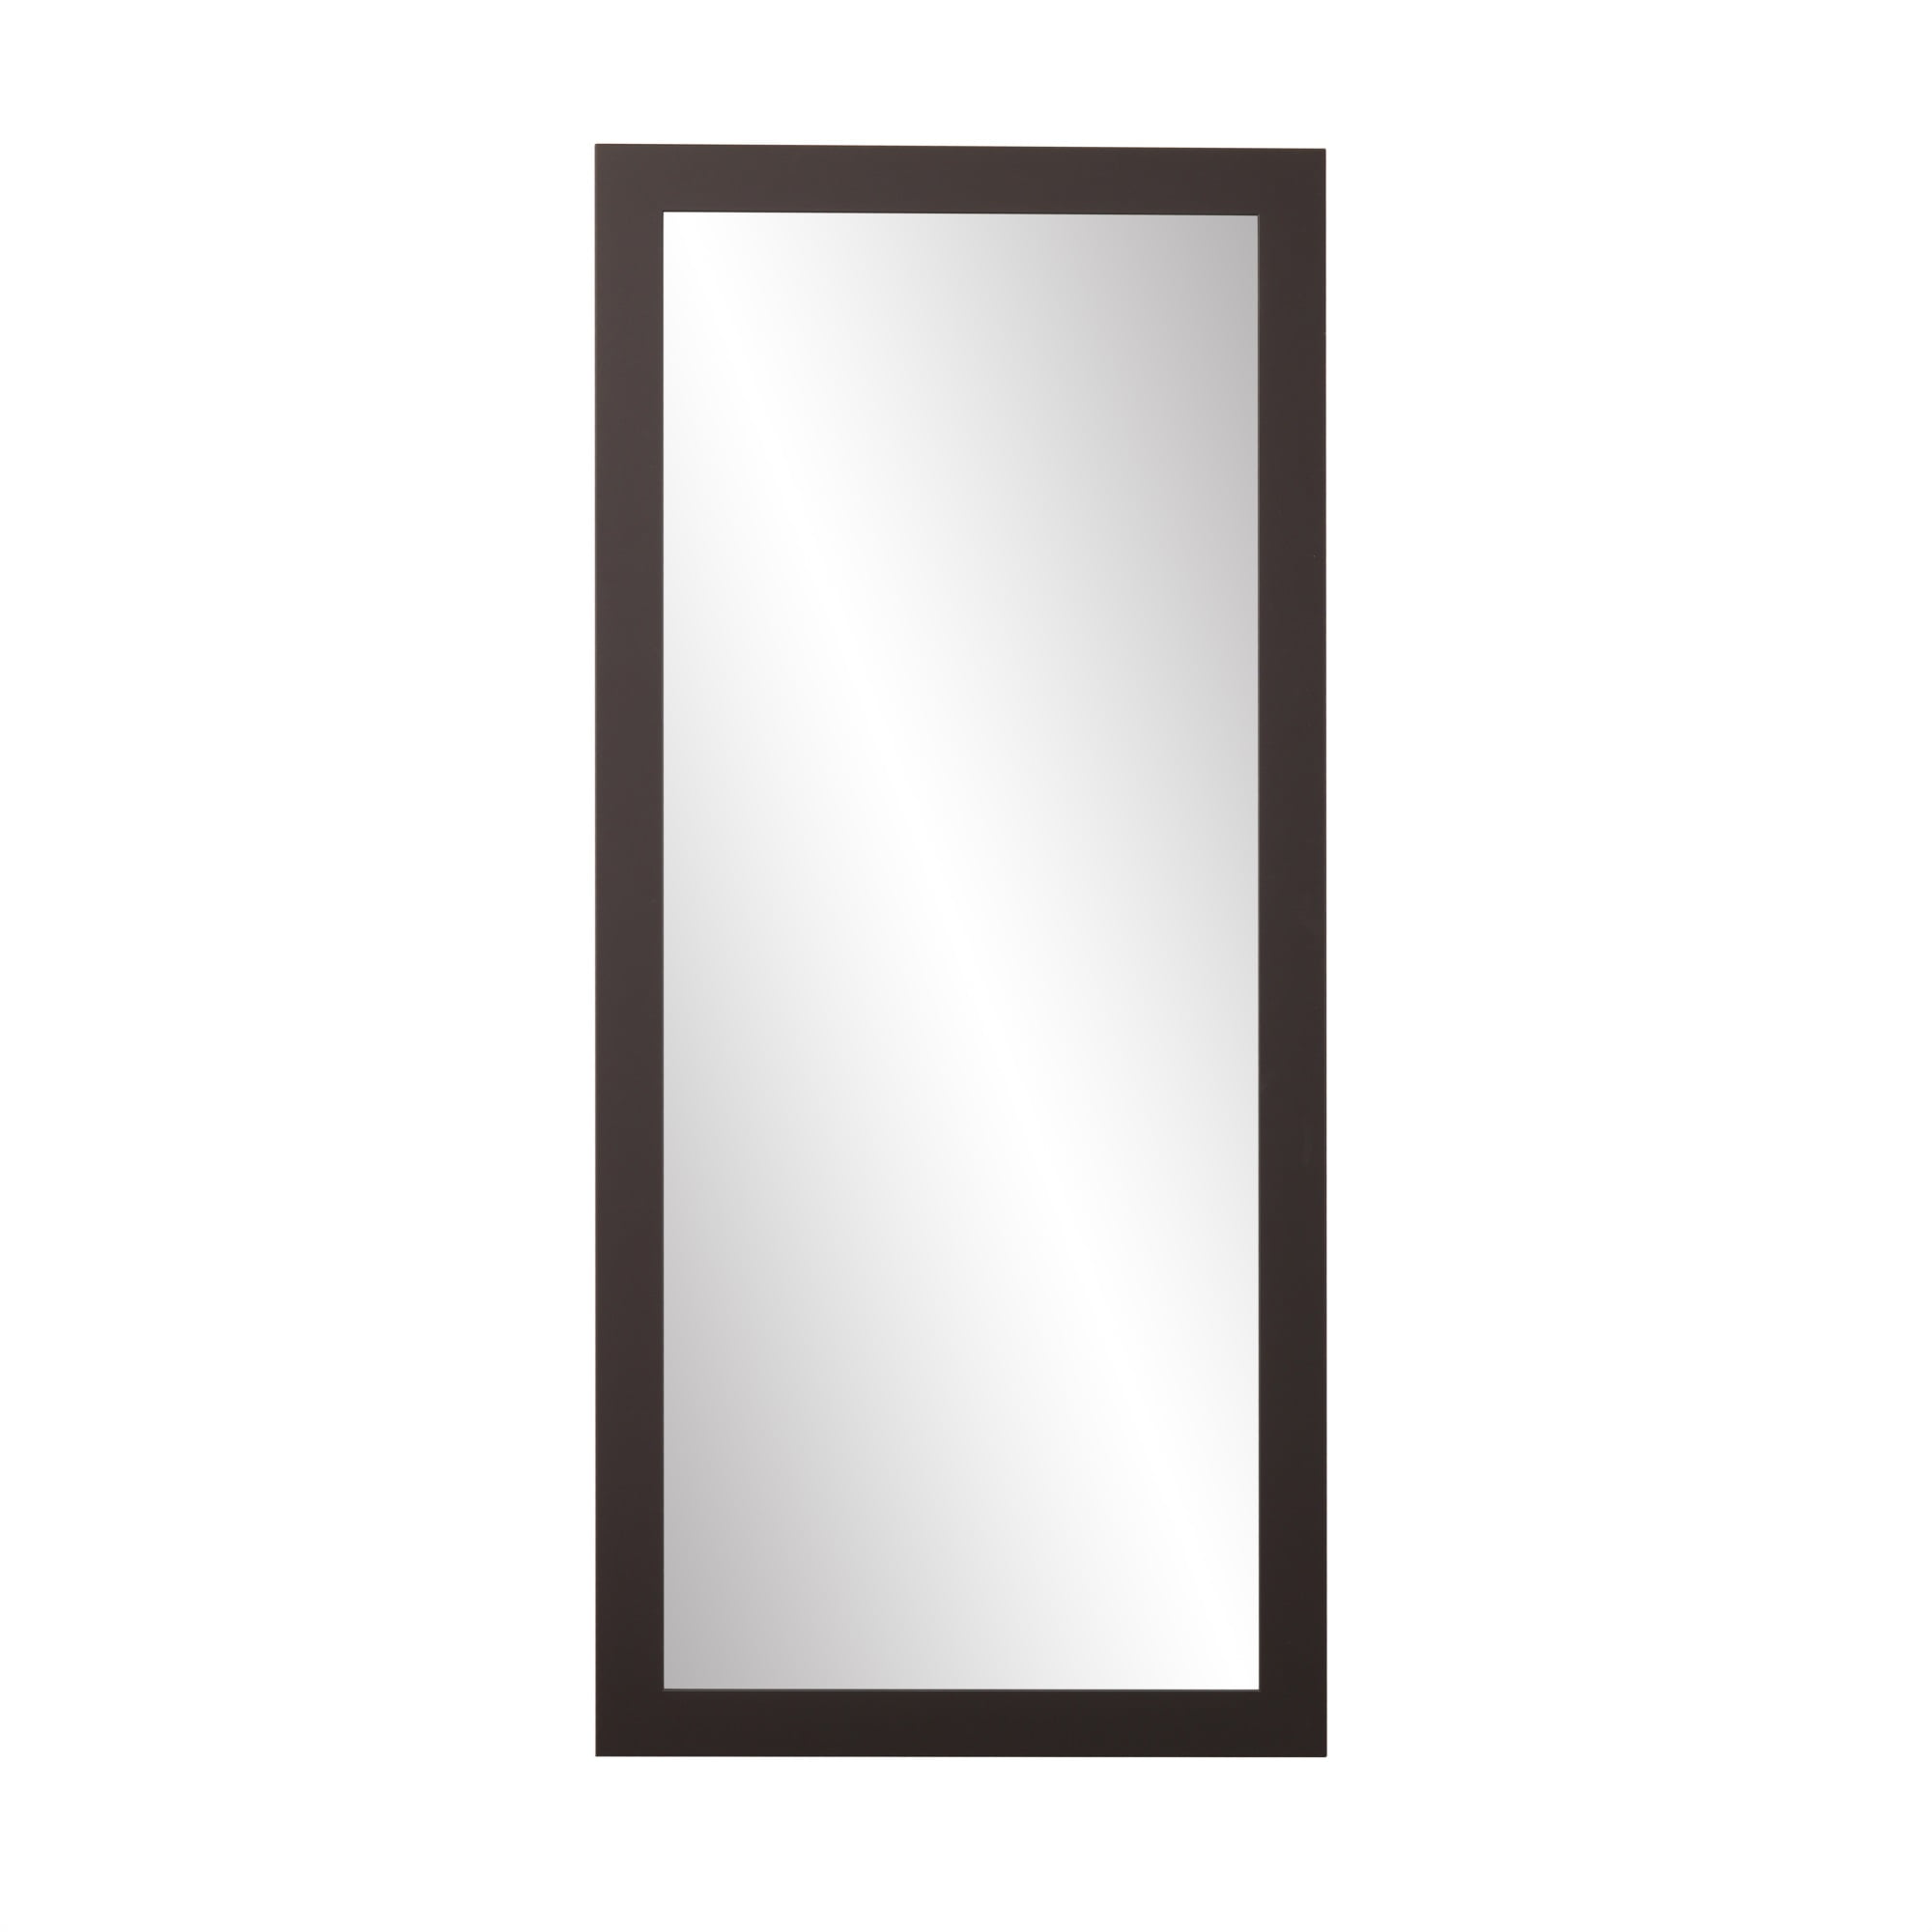 Matte Black Framed Floor Leaning Tall, Large Floor Mirror Black Frame